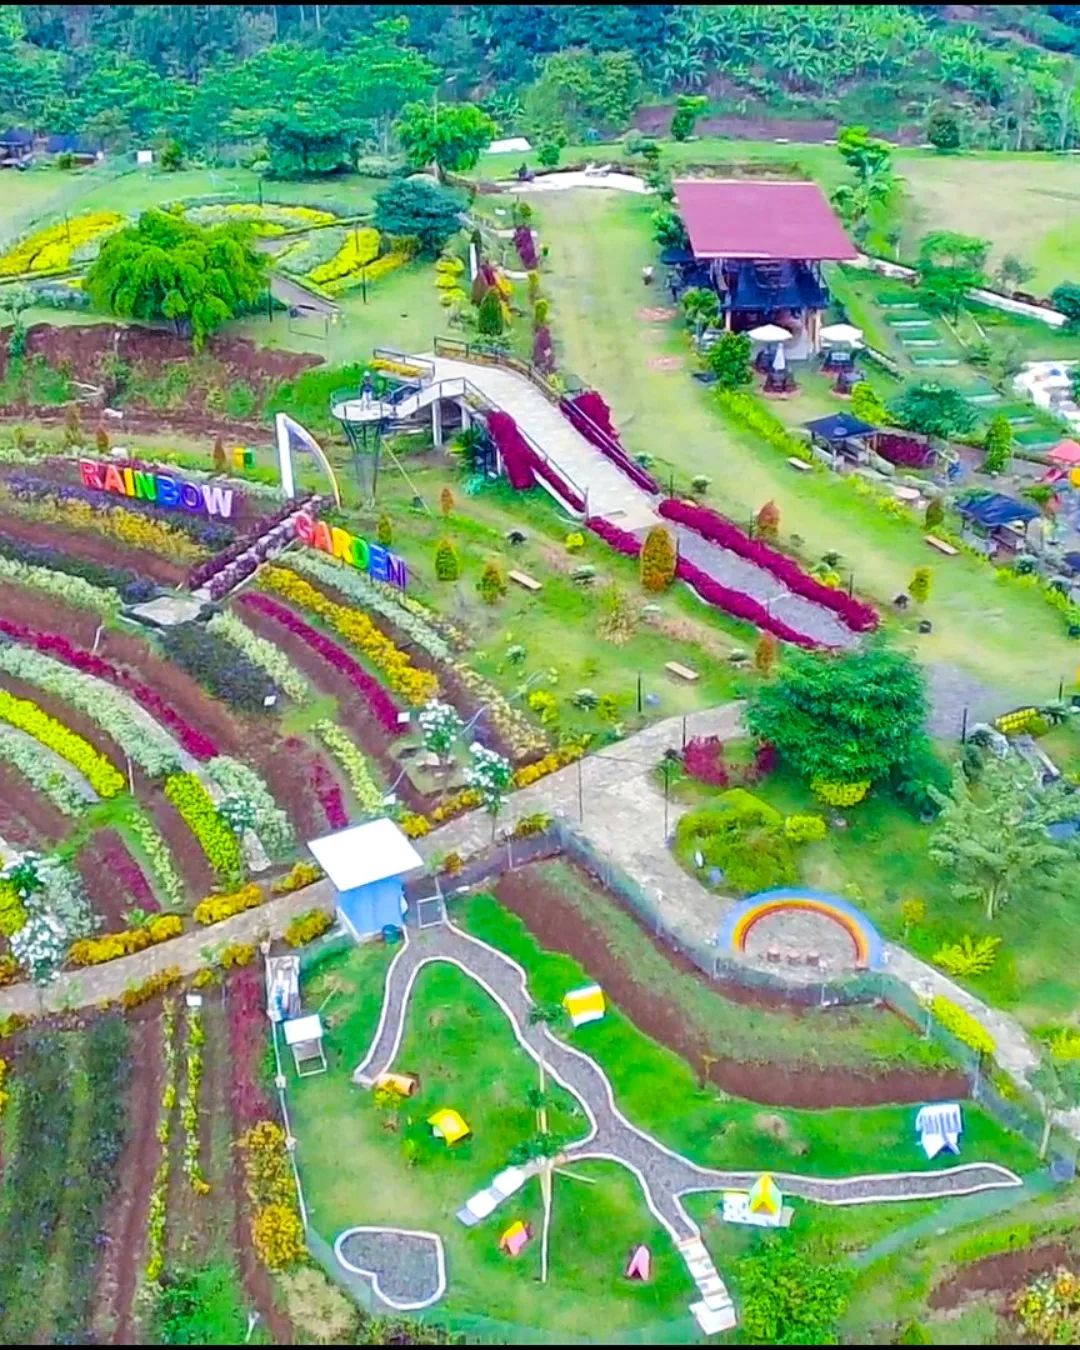 Tempat Wisata Di Trawas Rainbow Garden Poetoek Soeko Image From @july_nuryanto